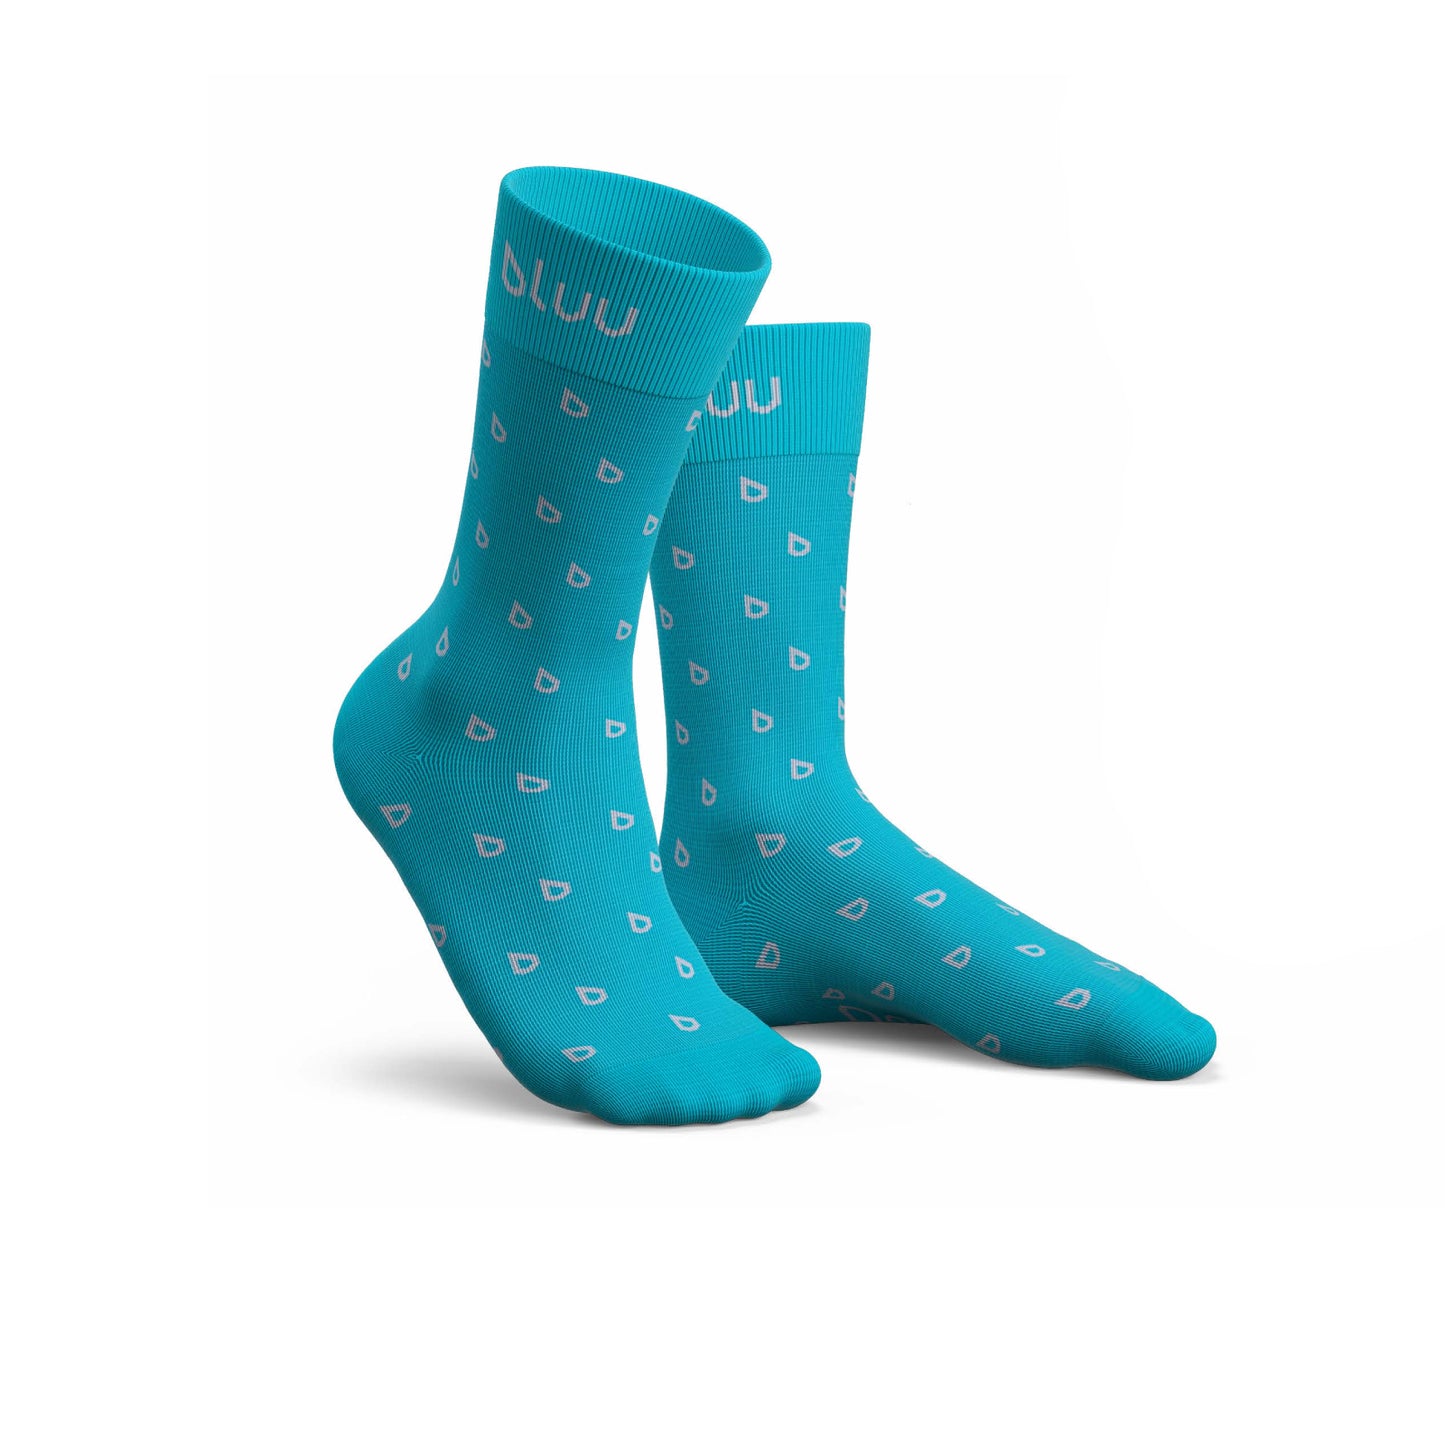 bluu socks